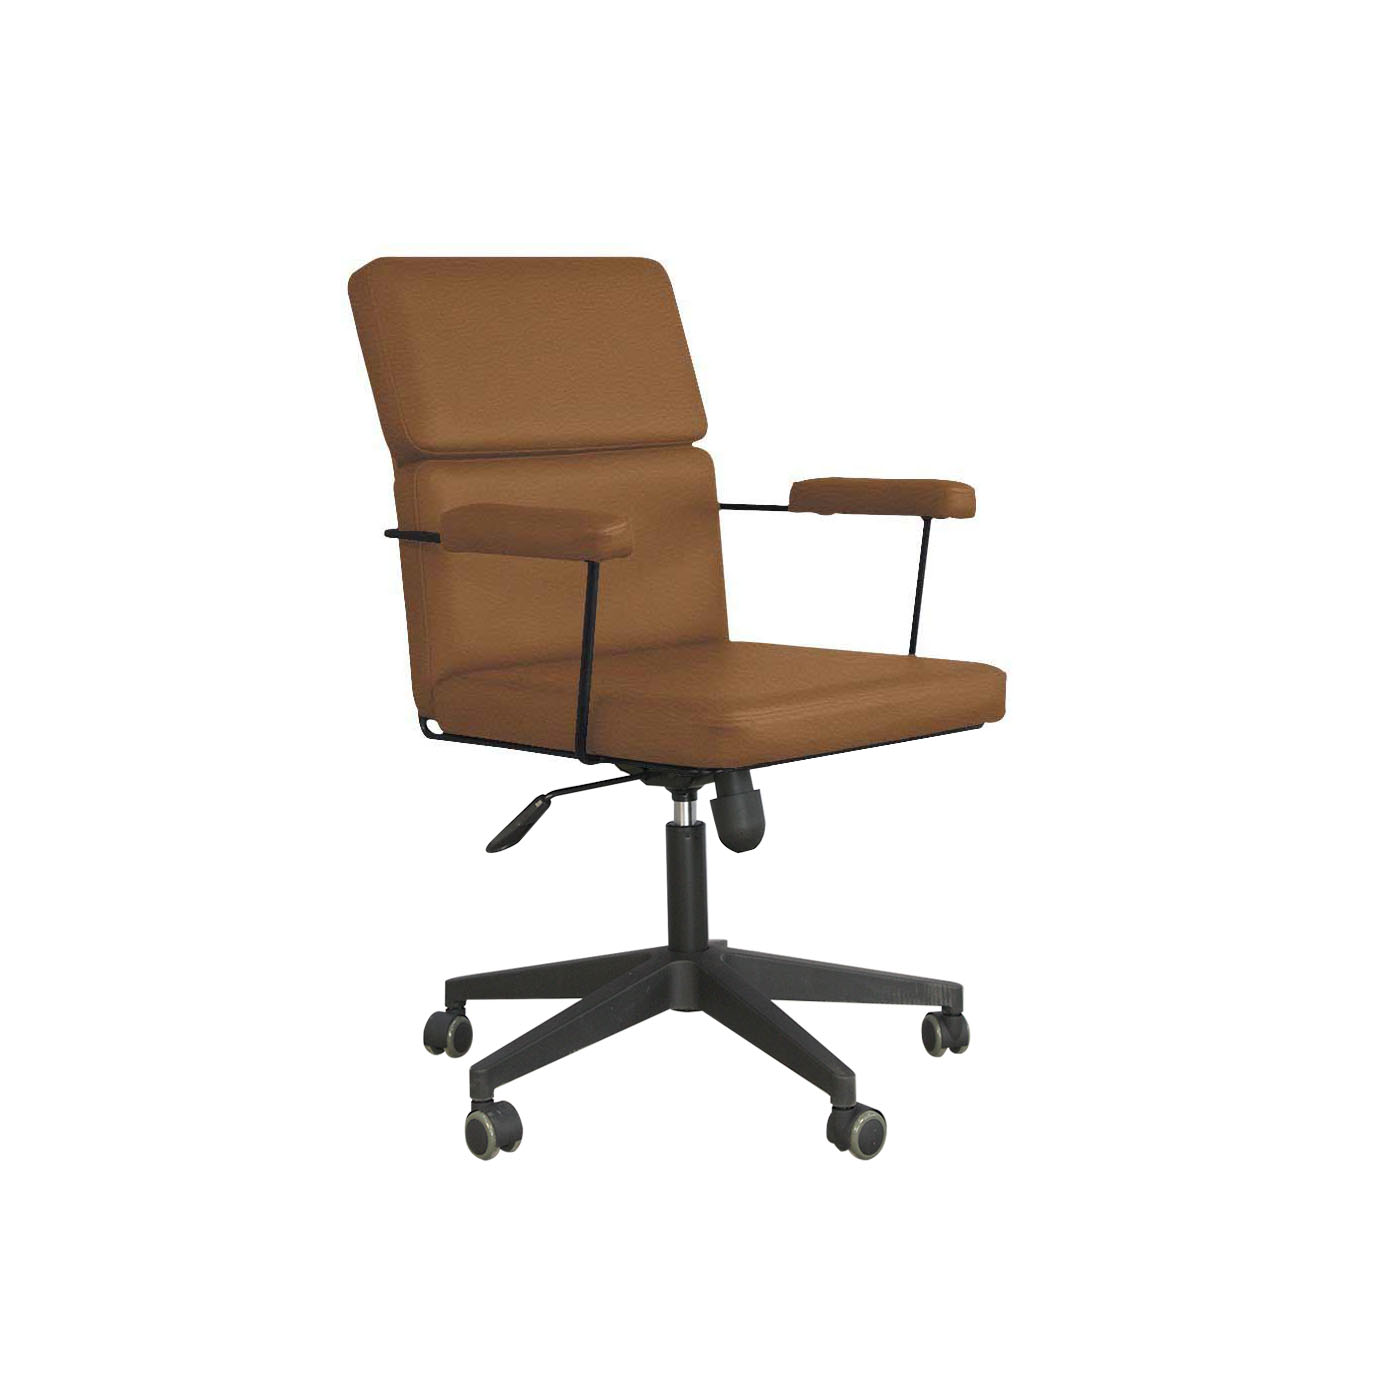 Dessau Russet Brown Work Chair